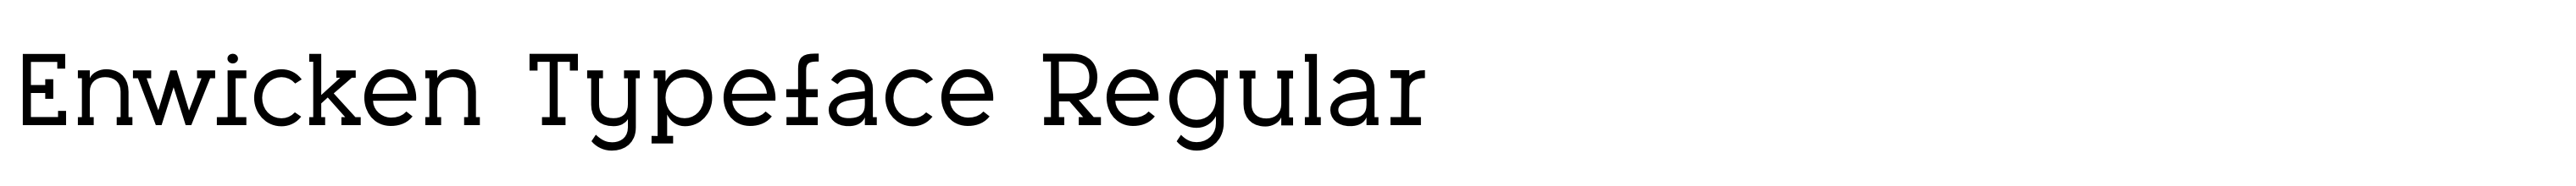 Enwicken Typeface Regular